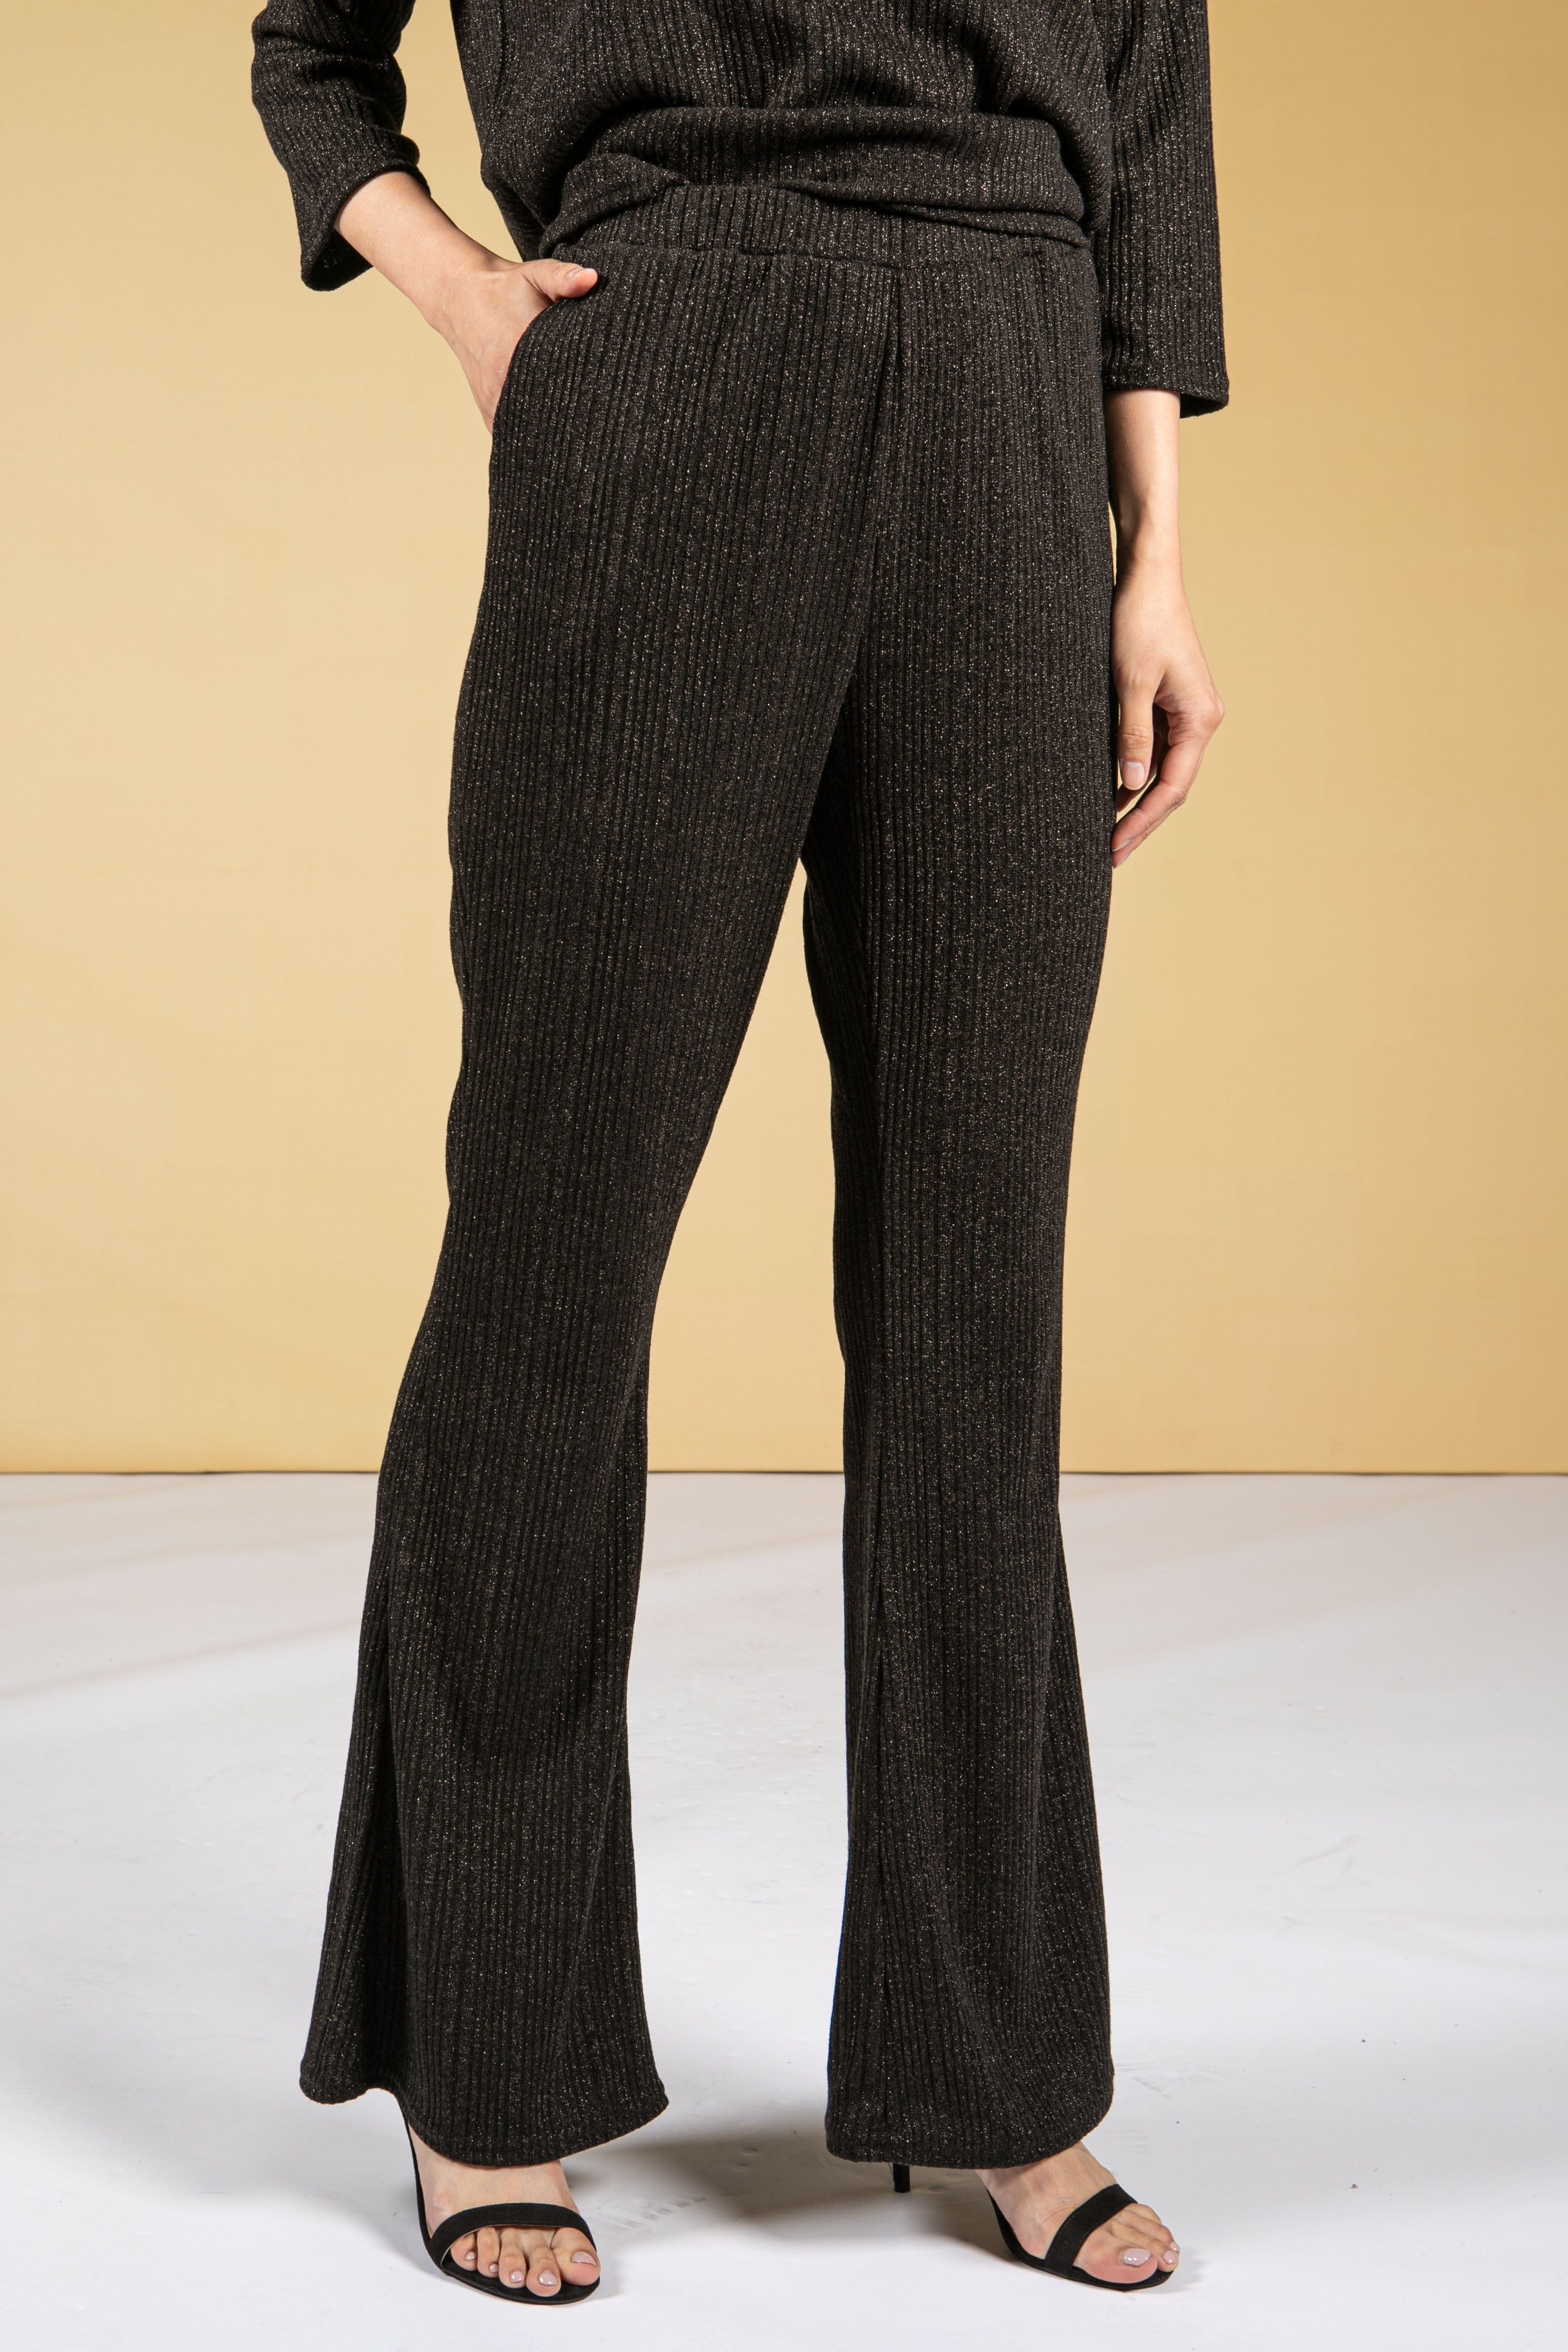 Twist Elasticated Waistband Cargo Trousers in Khaki | Pamela Scott